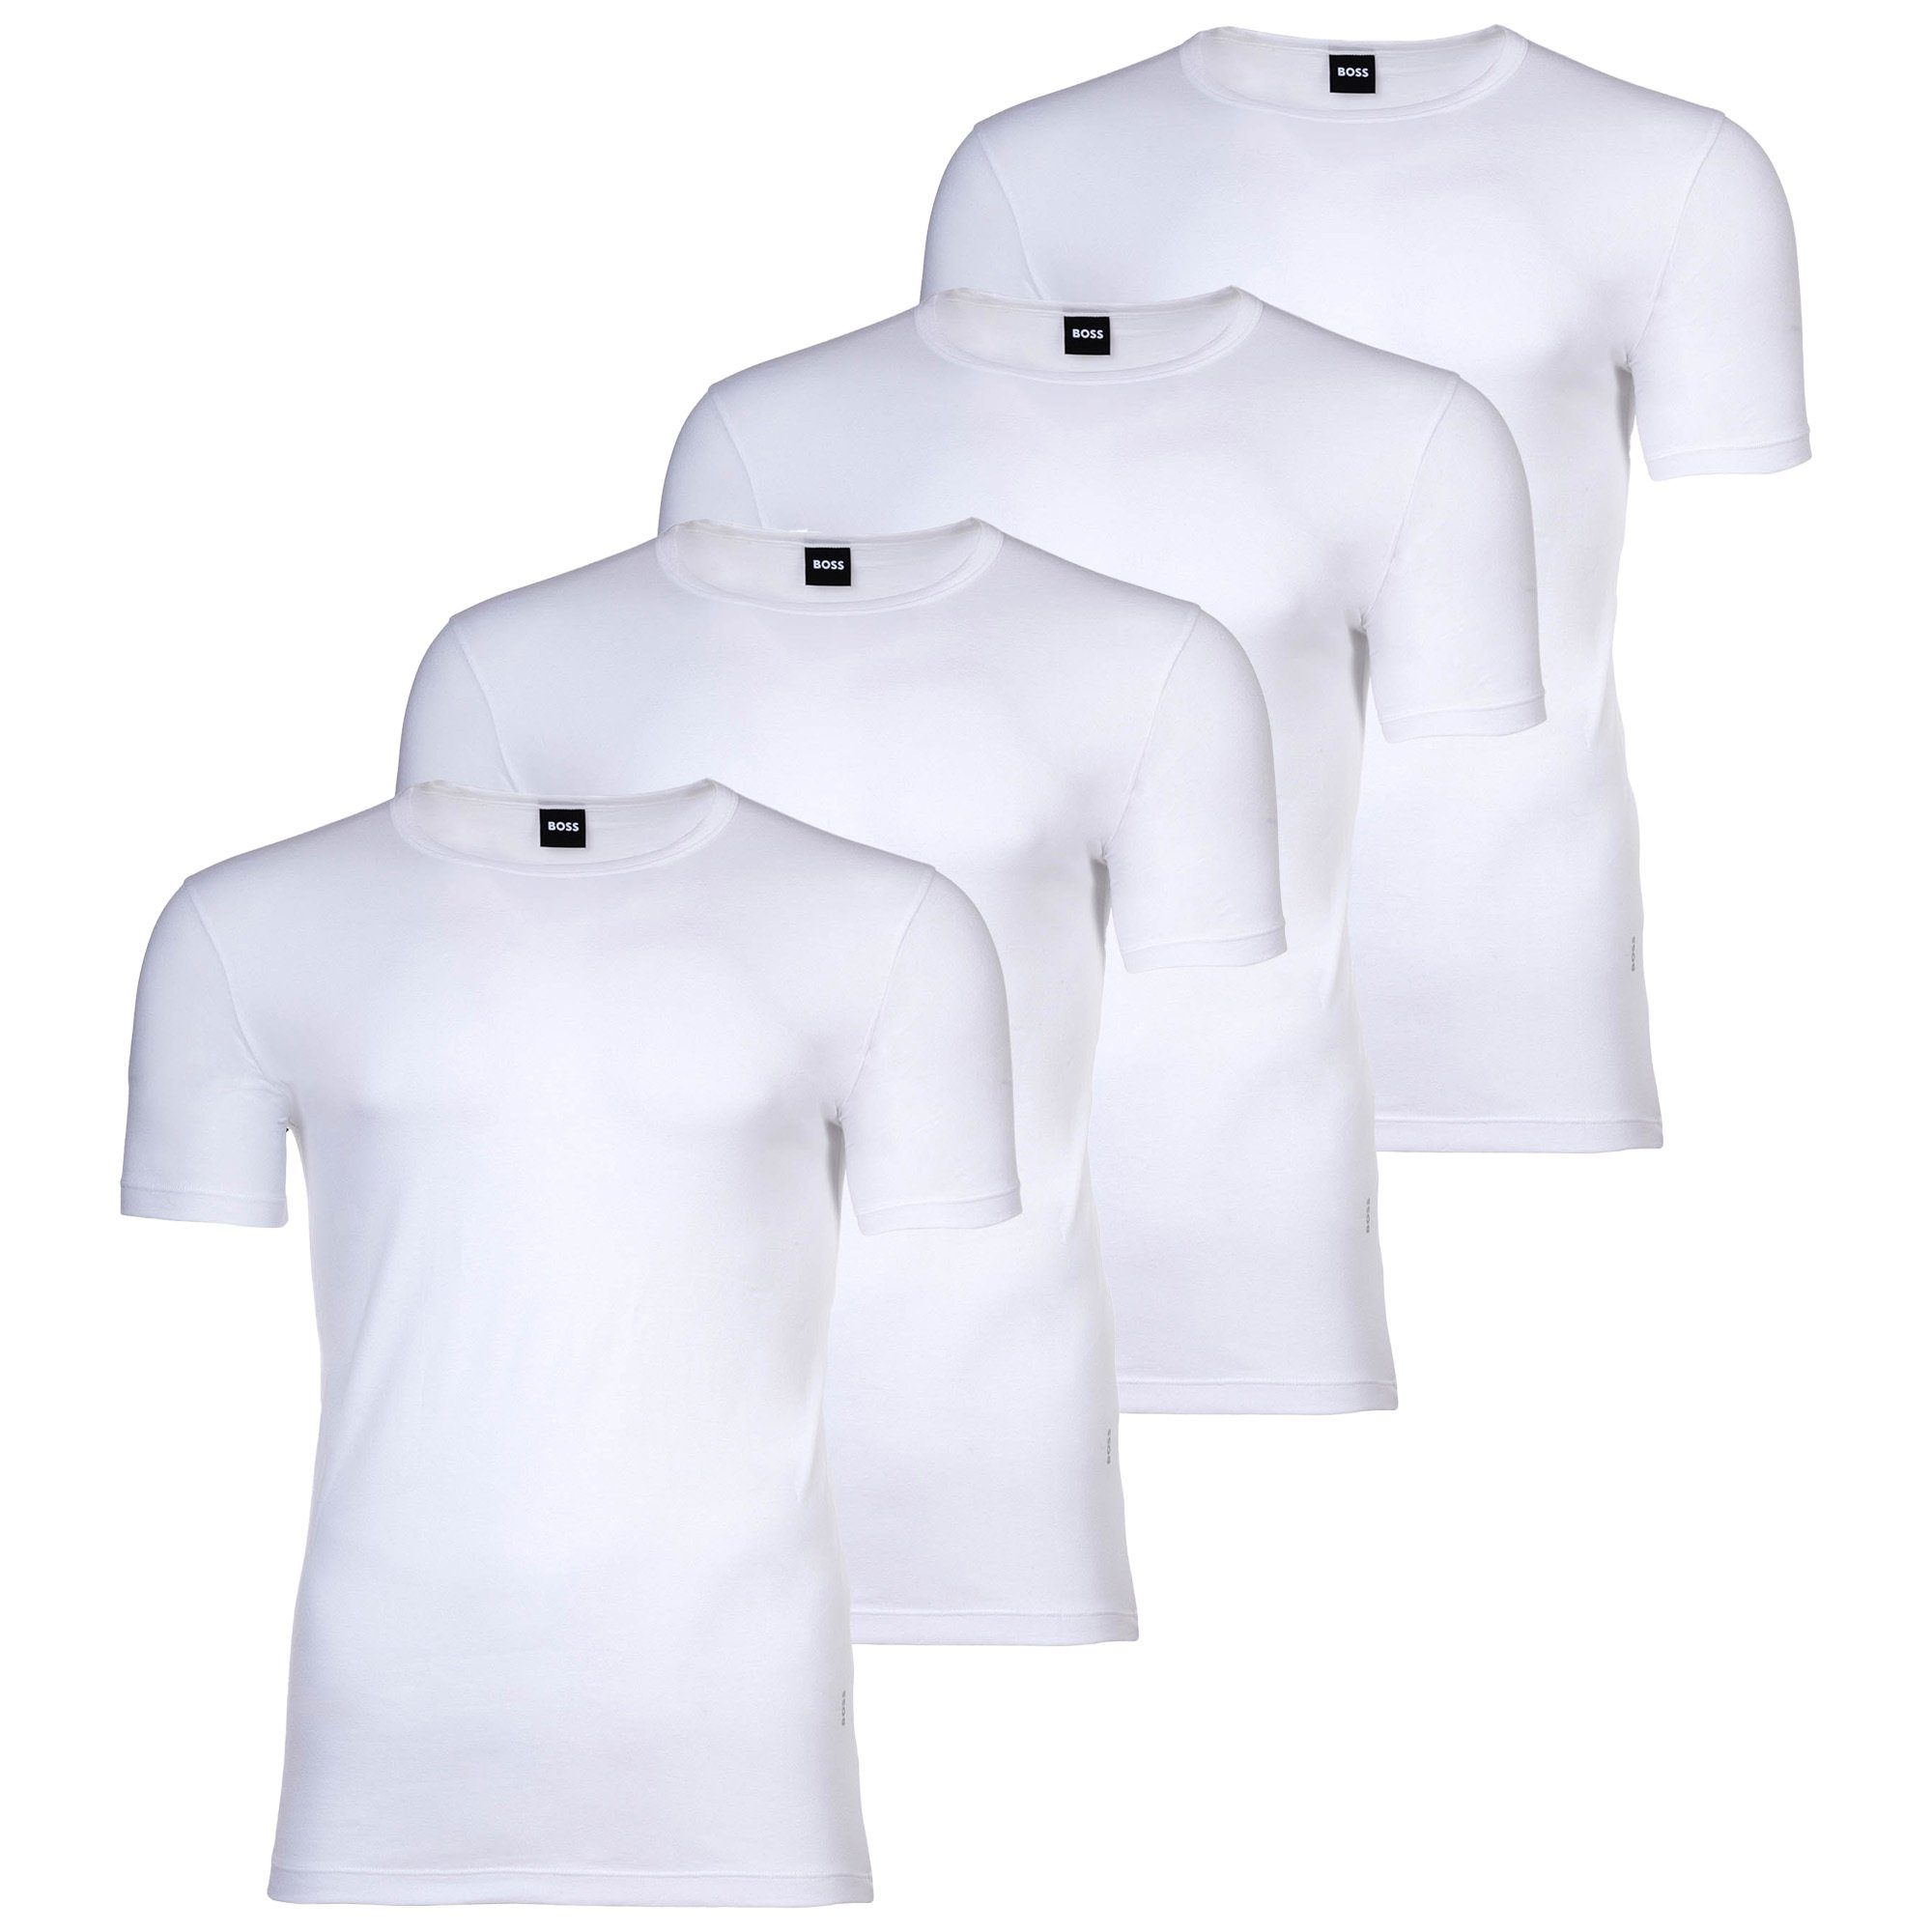 BOSS Unterhemd Herren T-Shirts, 4er Pack - Shirts, Unterhemd Weiß